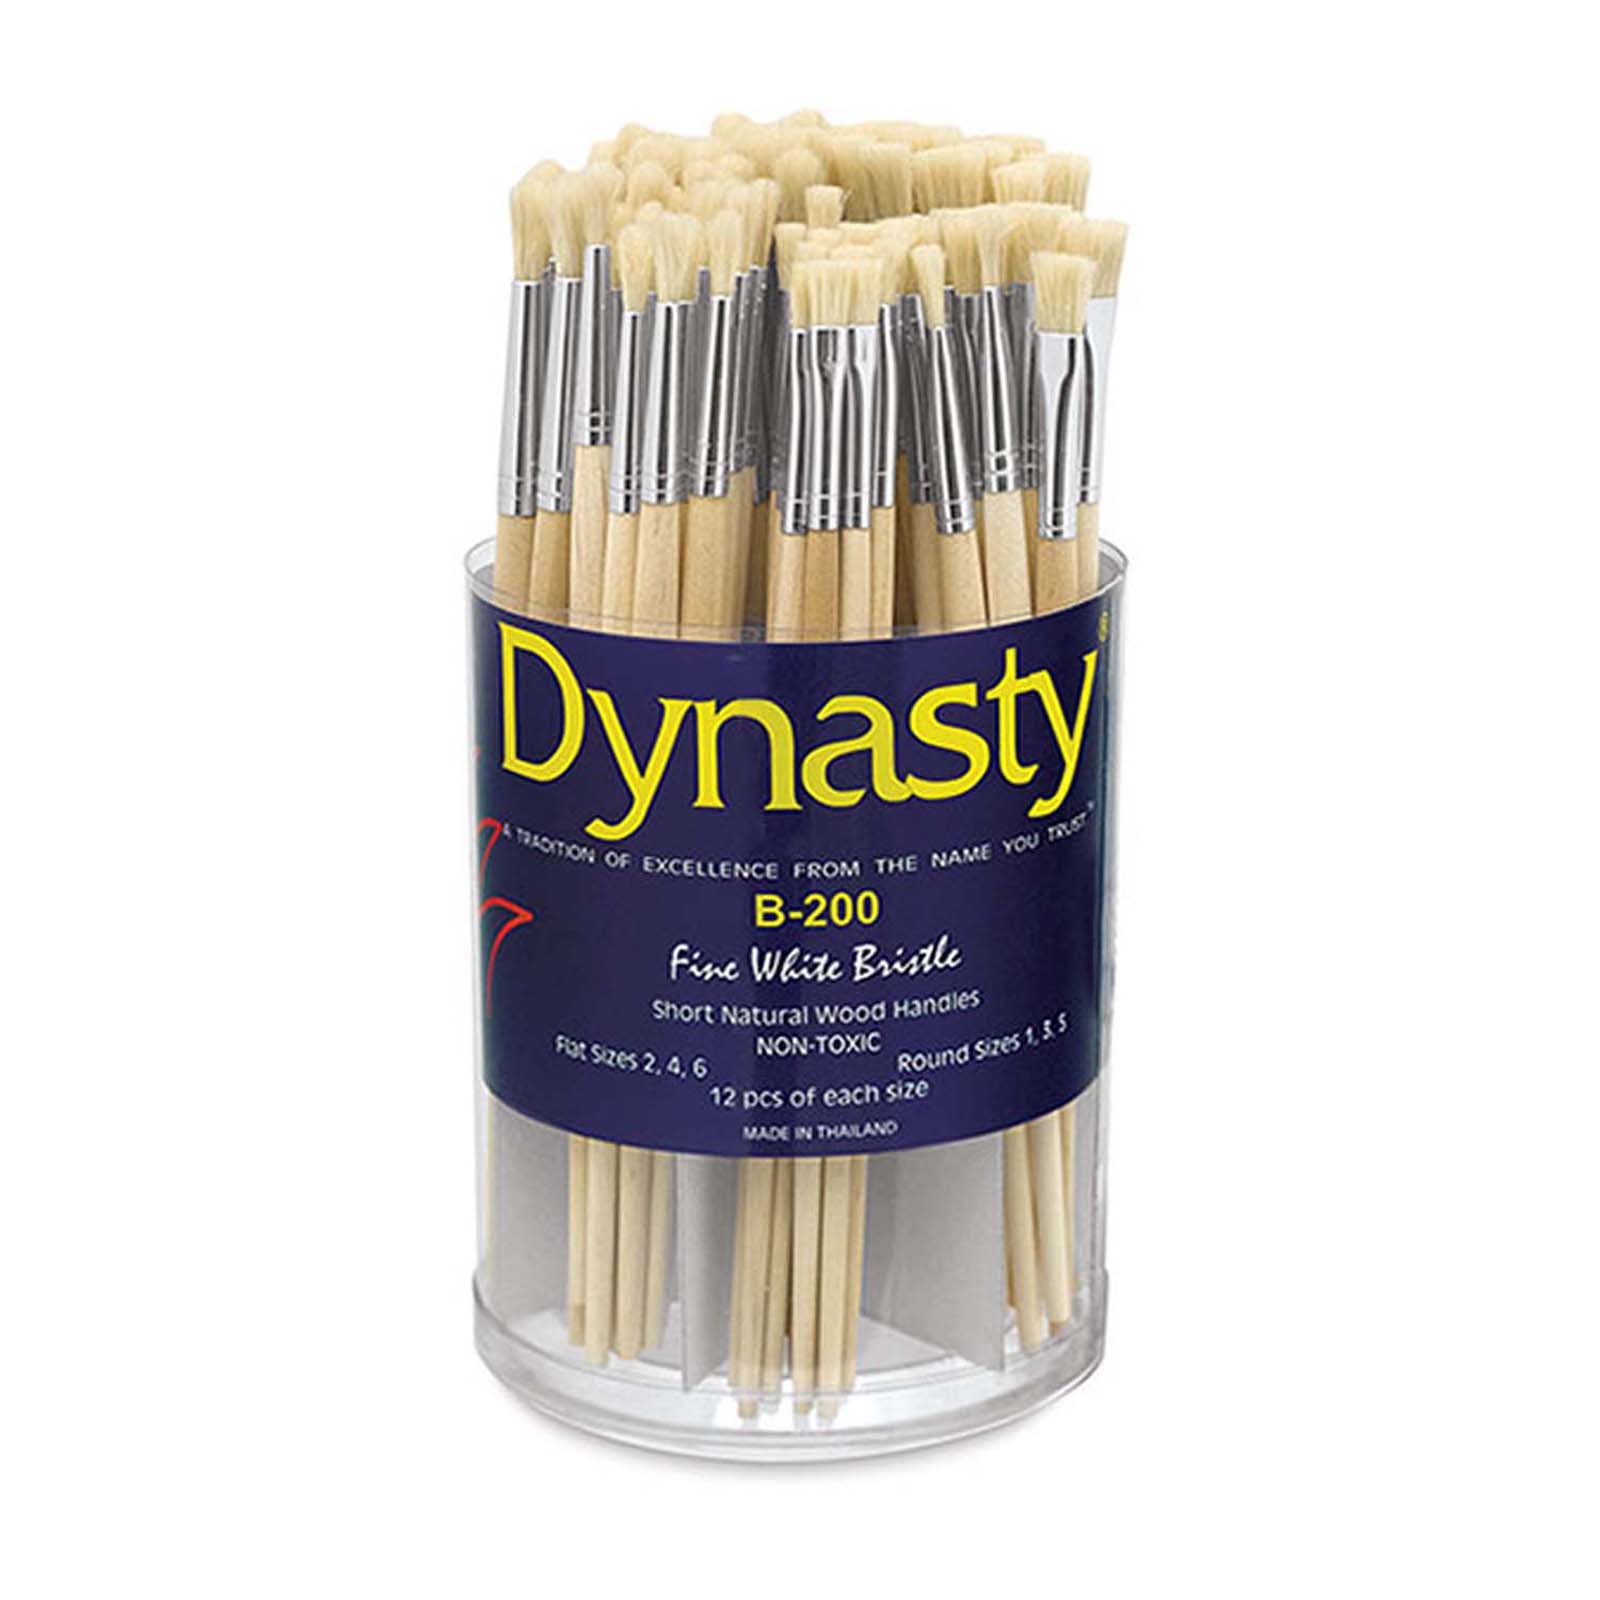 Dynasty B-200 Cylinder Pure White Bristle Short Enameled Wood Handle Paint Brush Set, Assorted Size, White, Set of 72